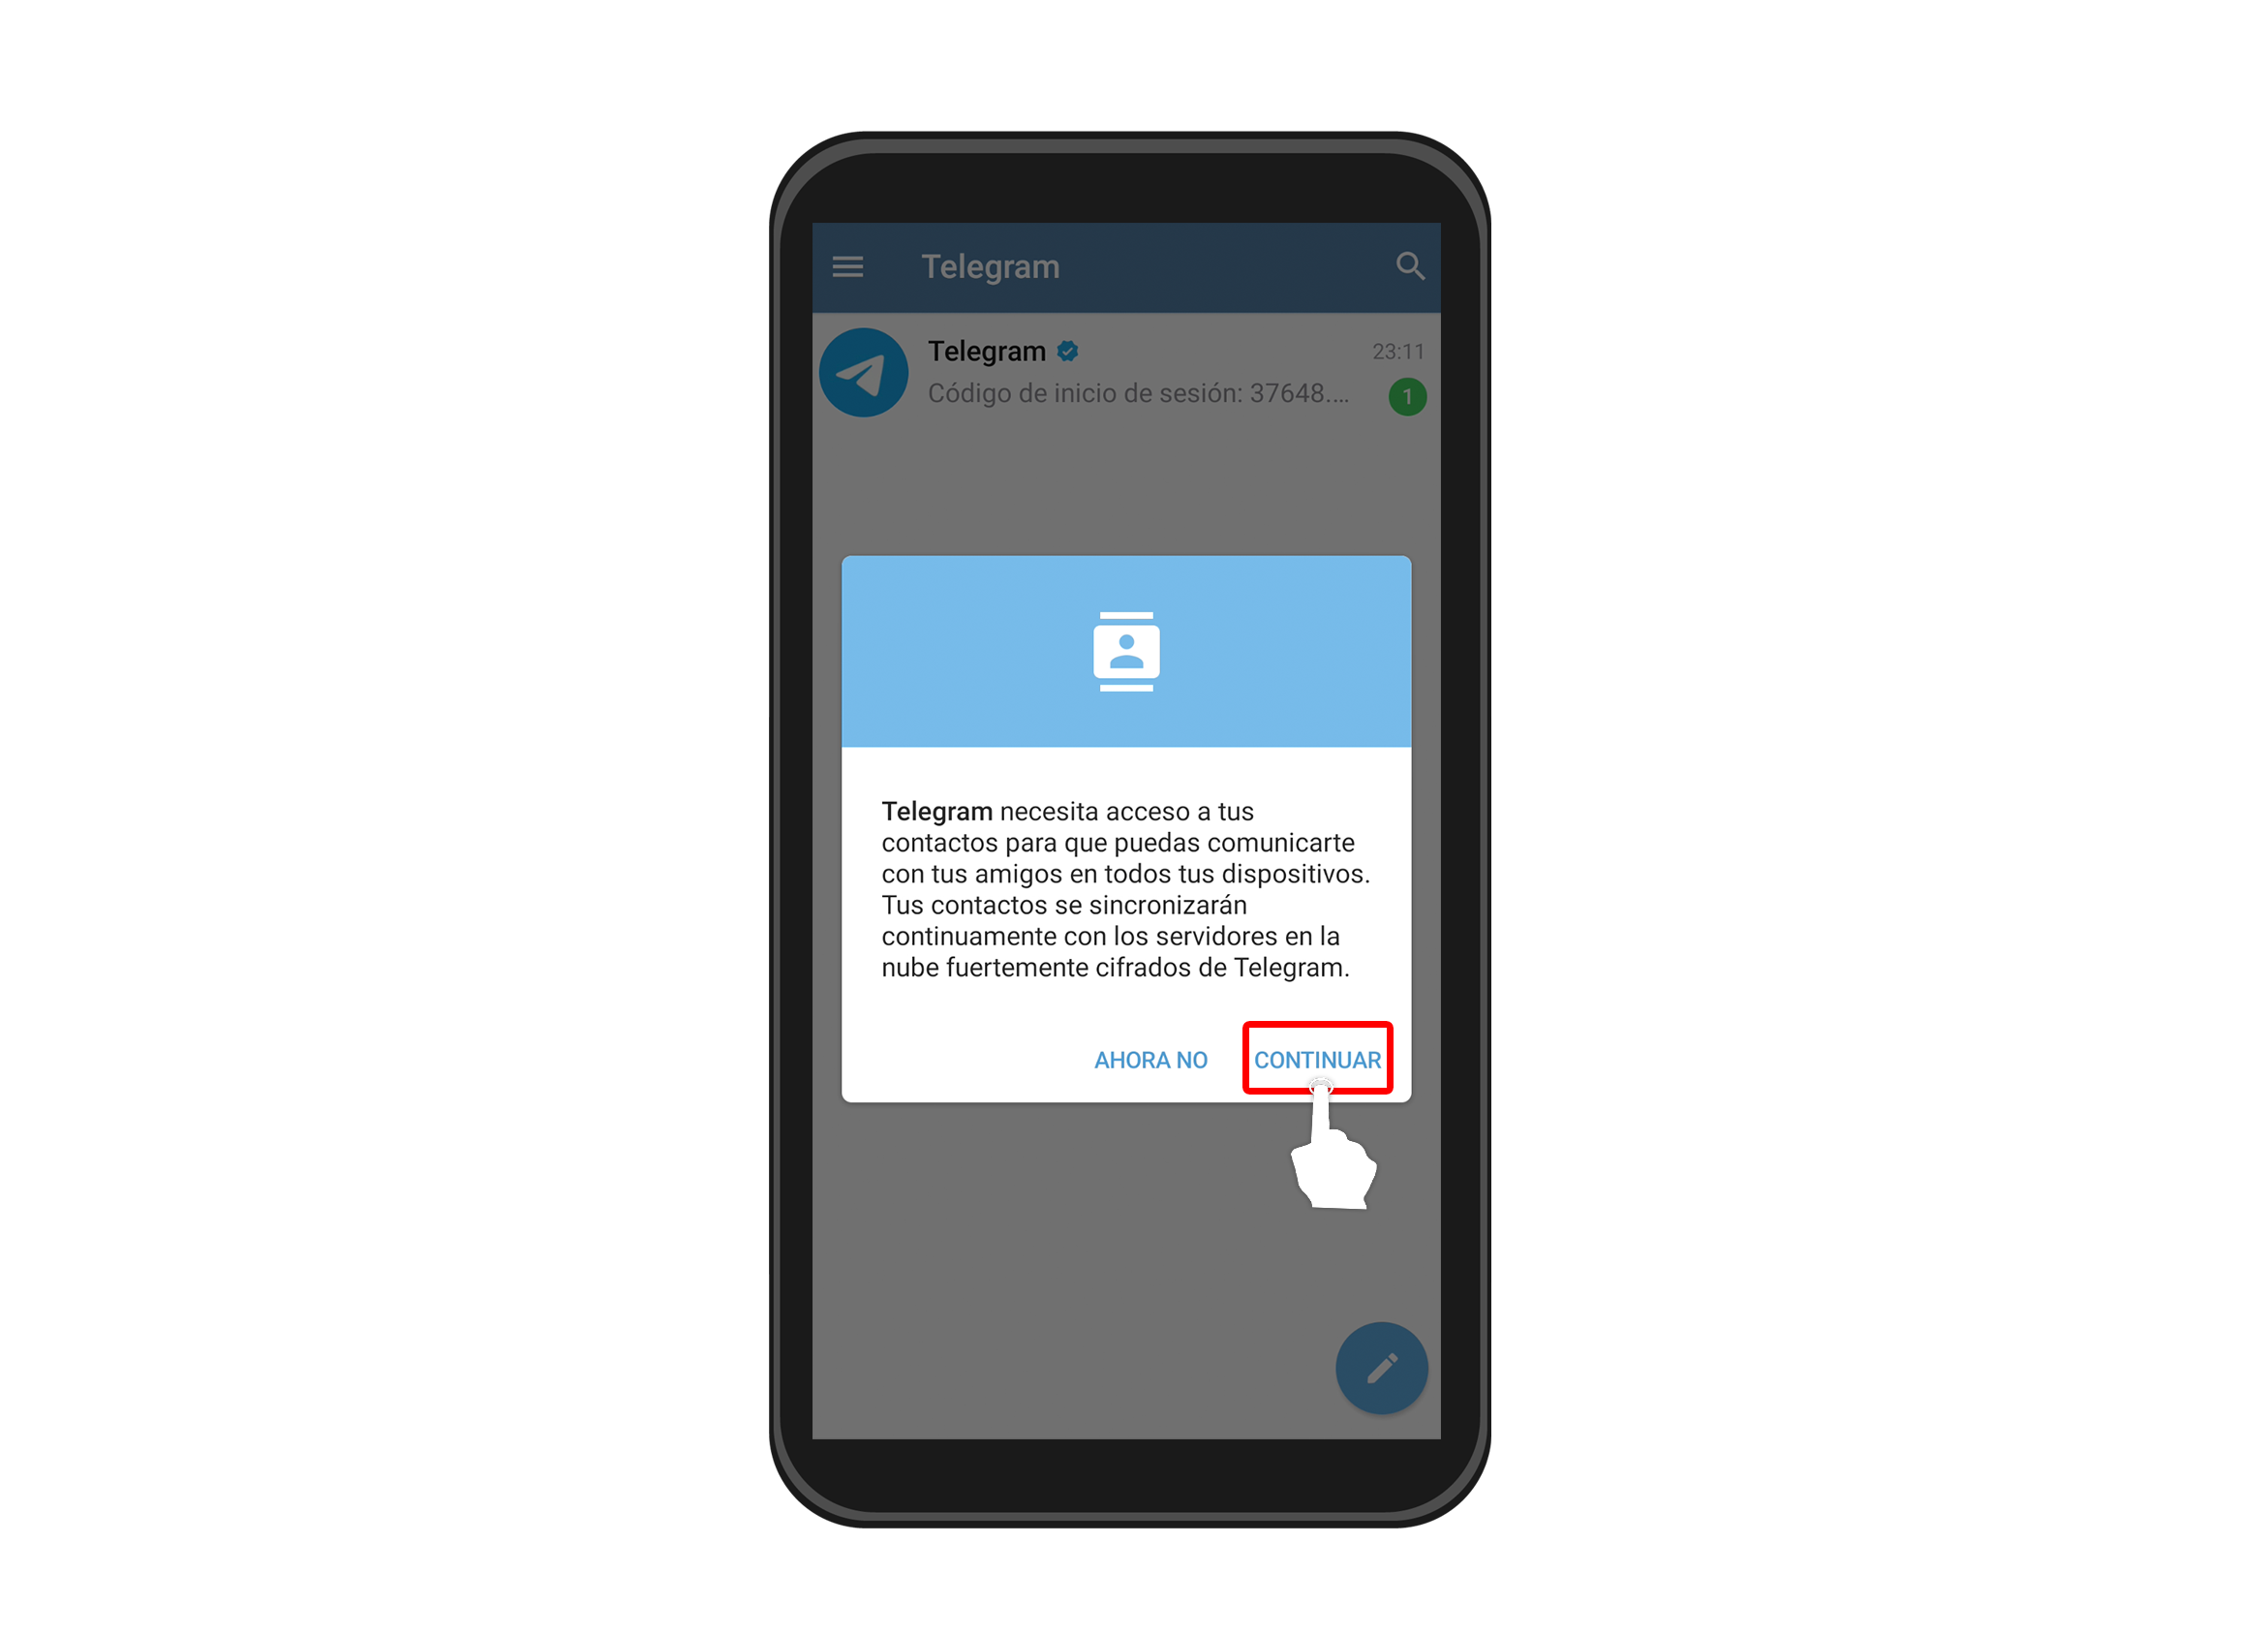 Una vez ingreses a la aplicación, te saldrá un mensaje para darle permiso a la app de sincronizarse con los contactos de tu dispositivo móvil. 